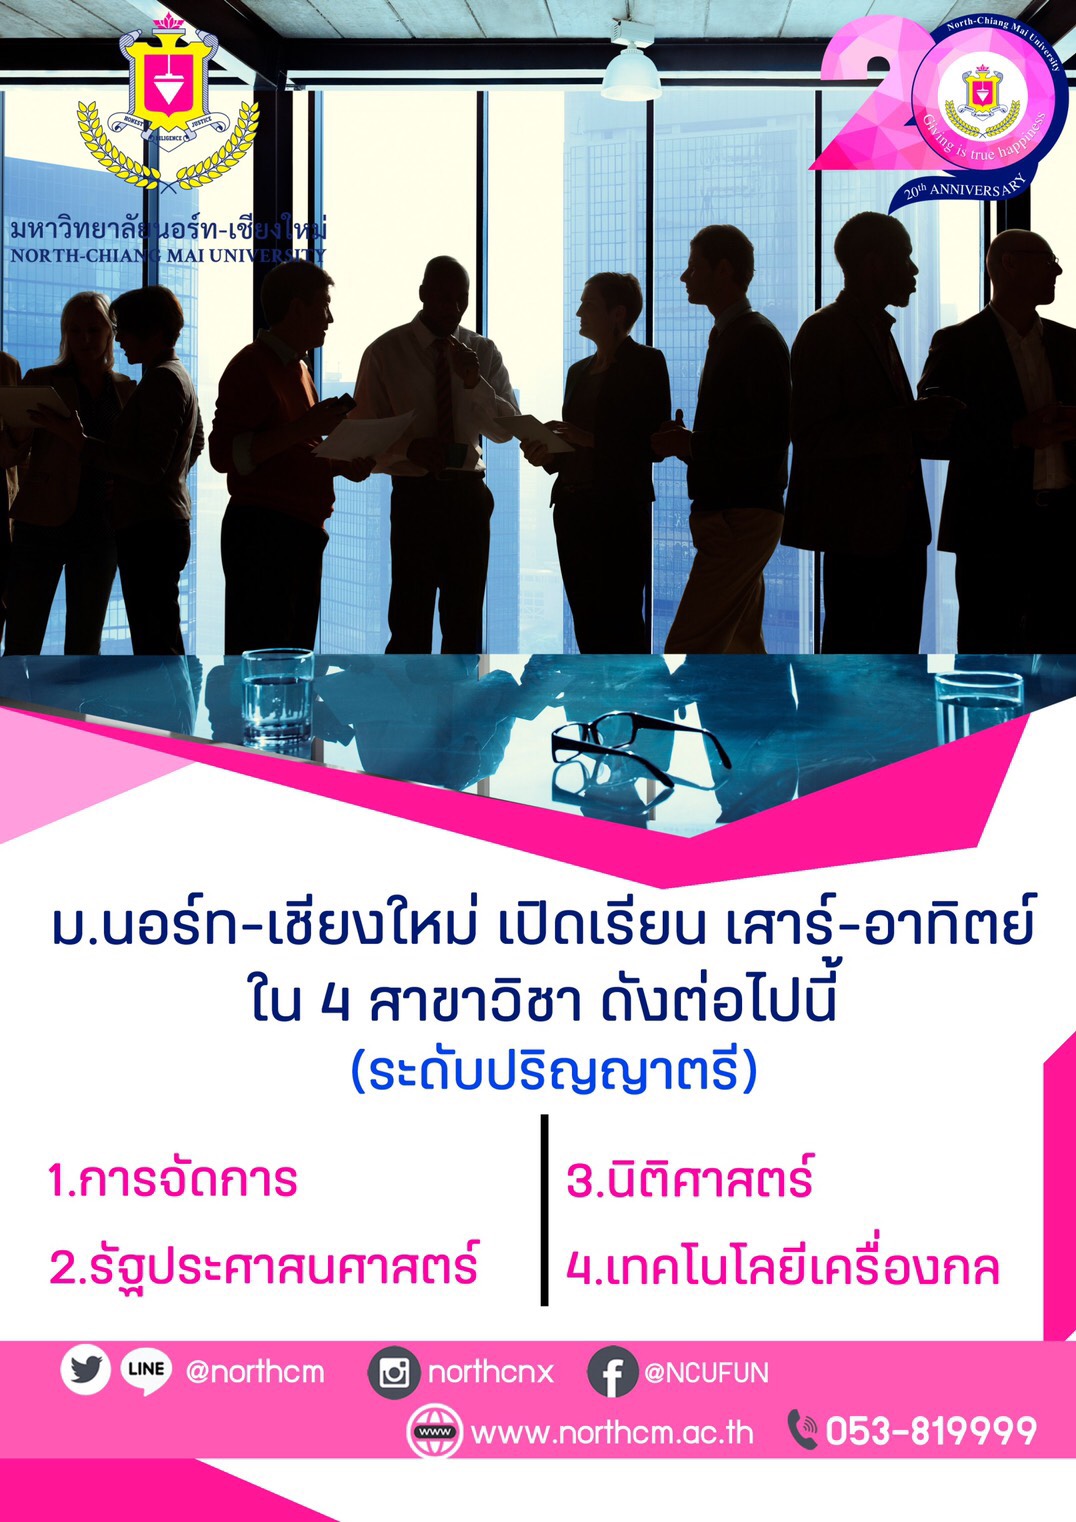 มหาวิทยาลัยนอร์ท - เชียงใหม่ เปิดรับสมัครนักศึกษาใหม่ ปีการศึกษา 2563 (เรียน เสาร์-อาทิตย์) - Chiang Mai News